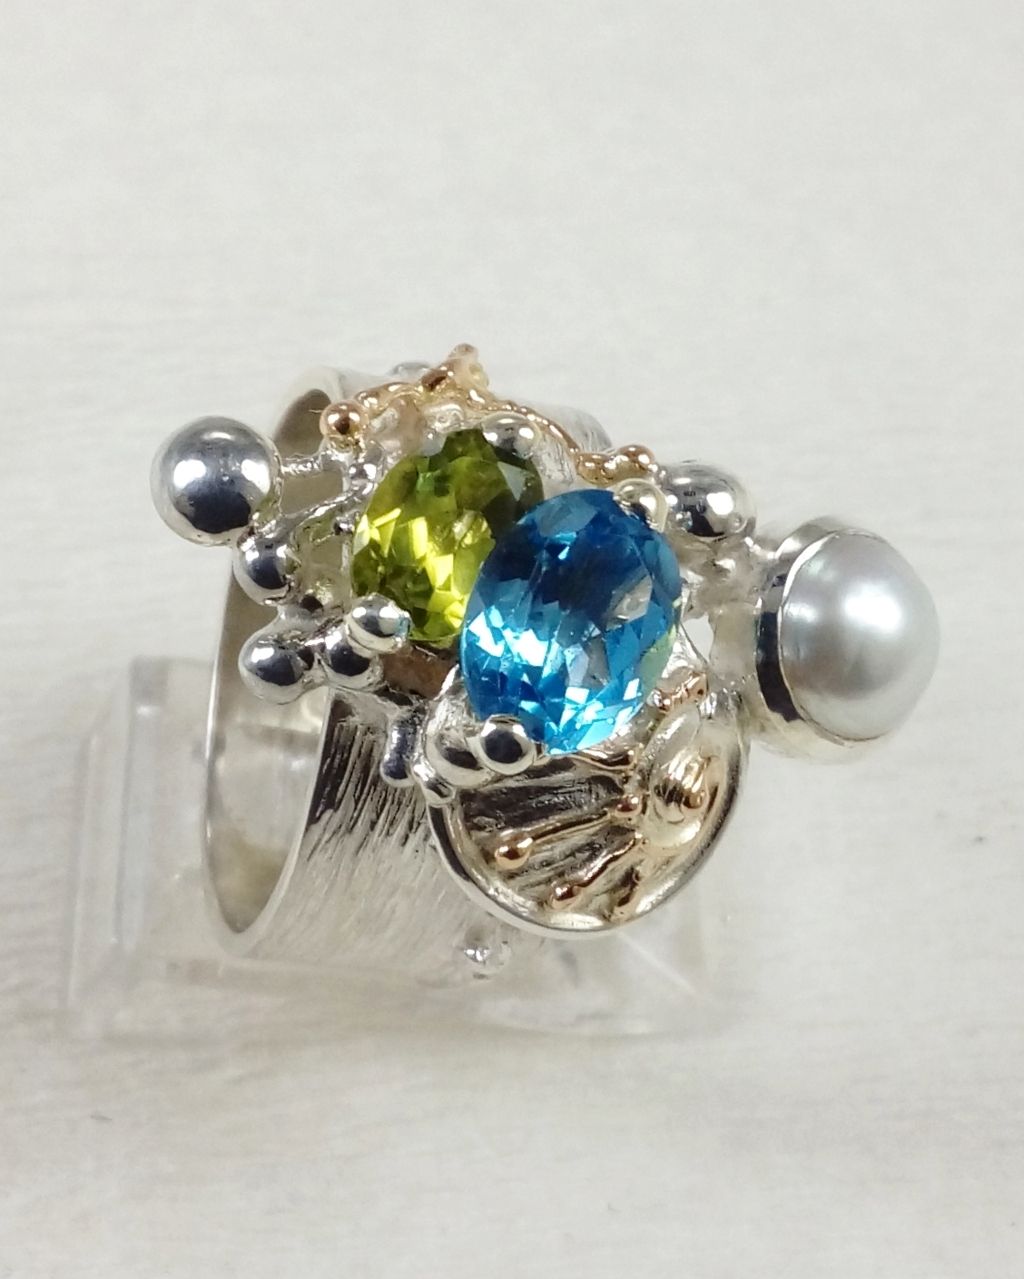 Gregory Pyra Piro prsten 3025, prsten s modrým topásem a peridotem, prsten s fazetovanými drahokamy a perlami, prsten ručně vyráběný řemeslníkem, prsteny prodávané v galeriích, šperky s doručením do Brna, šperky s doručením do Ostravy, šperky s doručením v Čechách